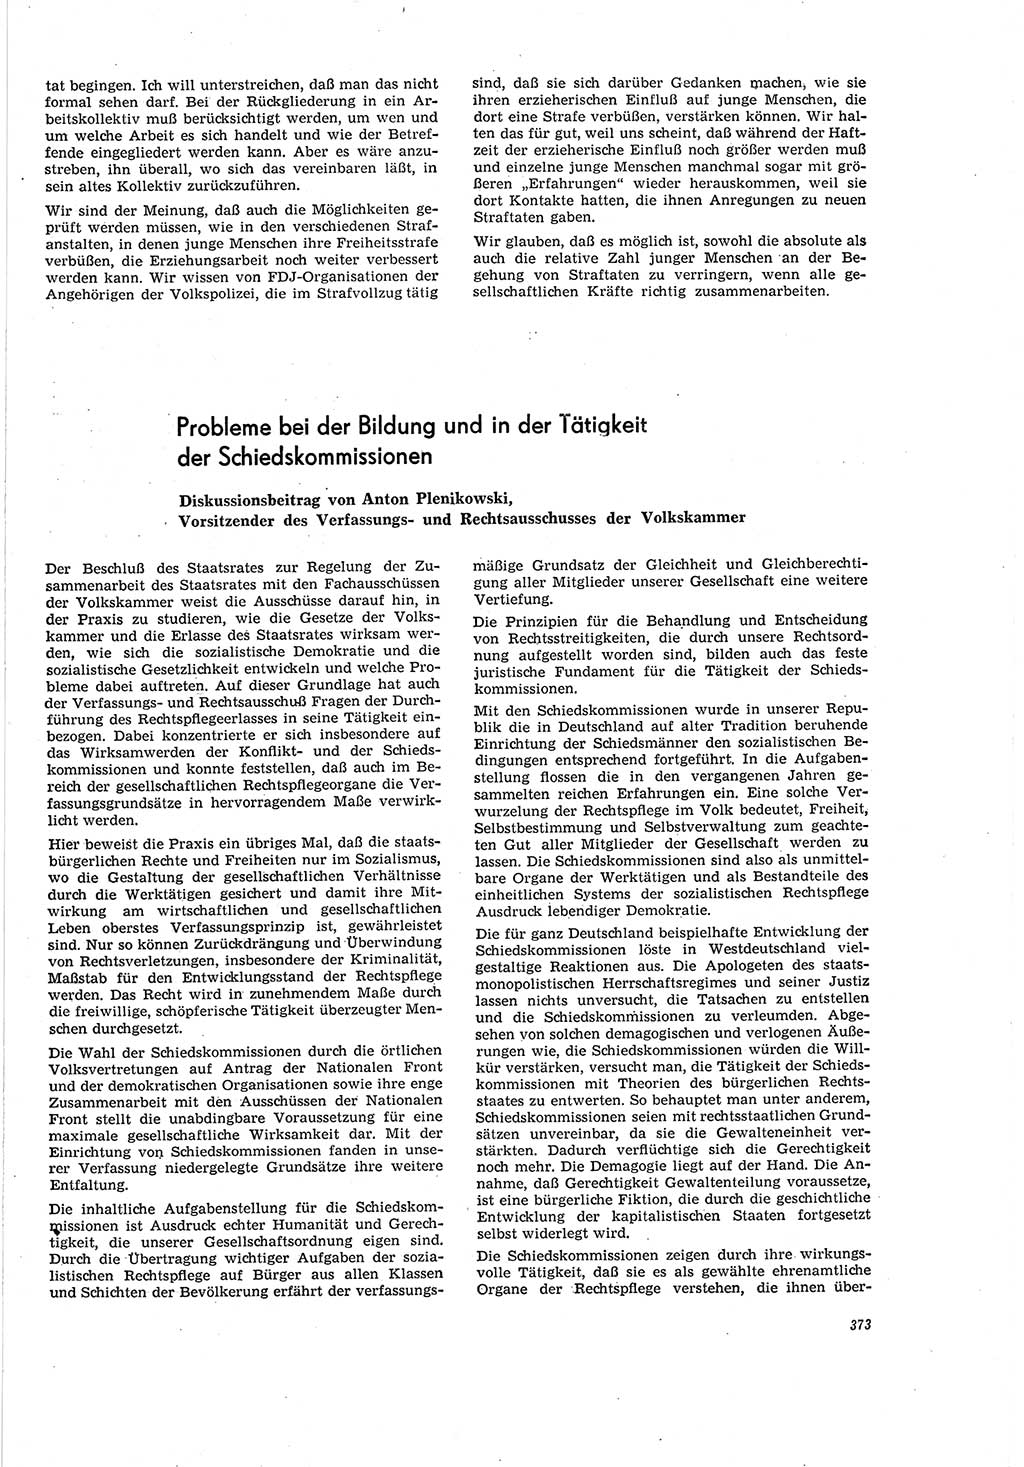 Neue Justiz (NJ), Zeitschrift für Recht und Rechtswissenschaft [Deutsche Demokratische Republik (DDR)], 20. Jahrgang 1966, Seite 373 (NJ DDR 1966, S. 373)